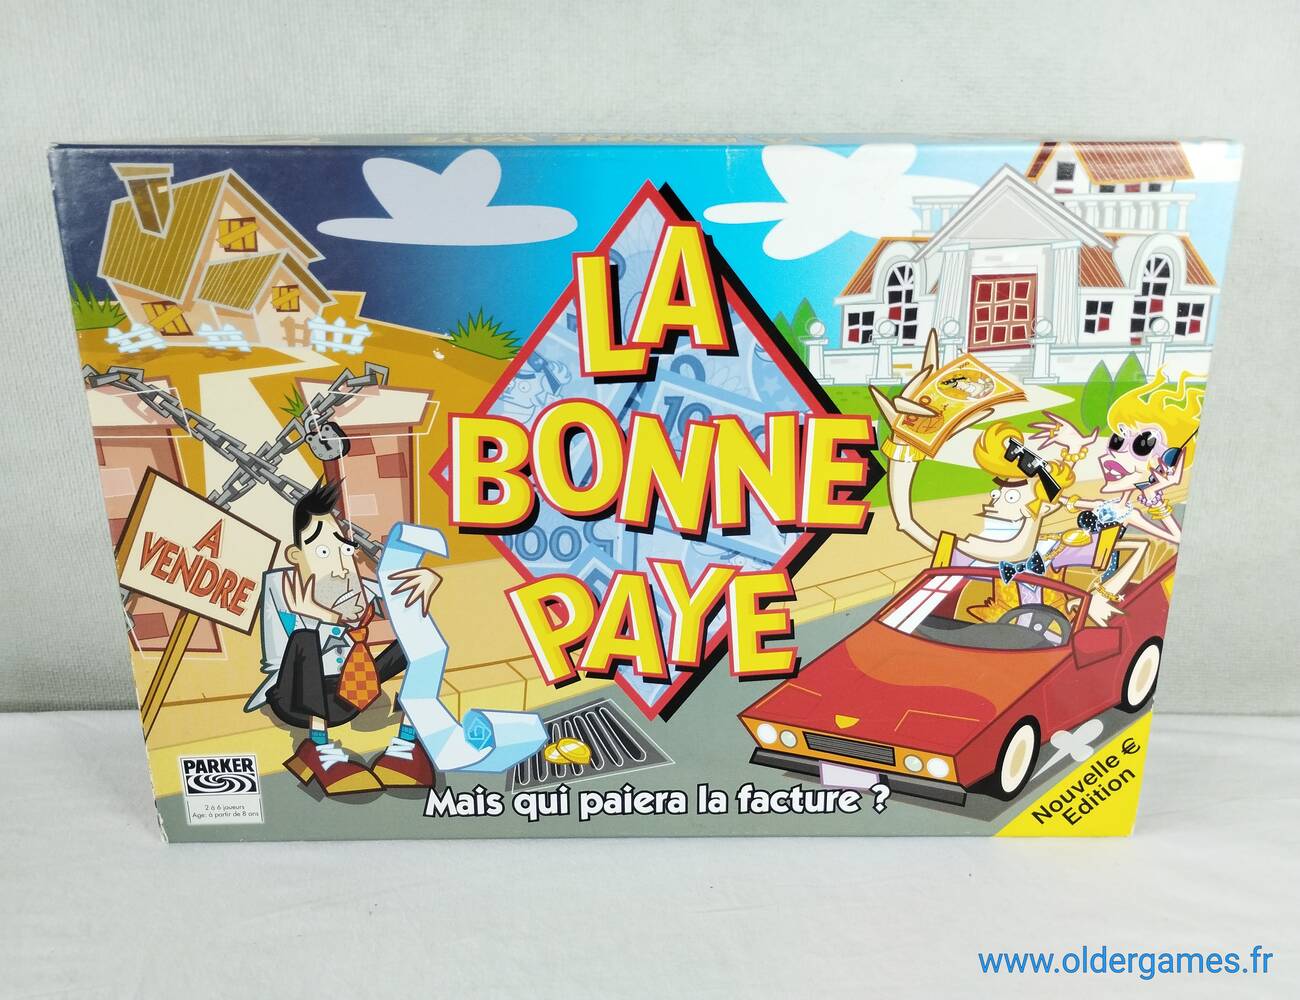 La Bonne Paye Nouvelle Edition. 